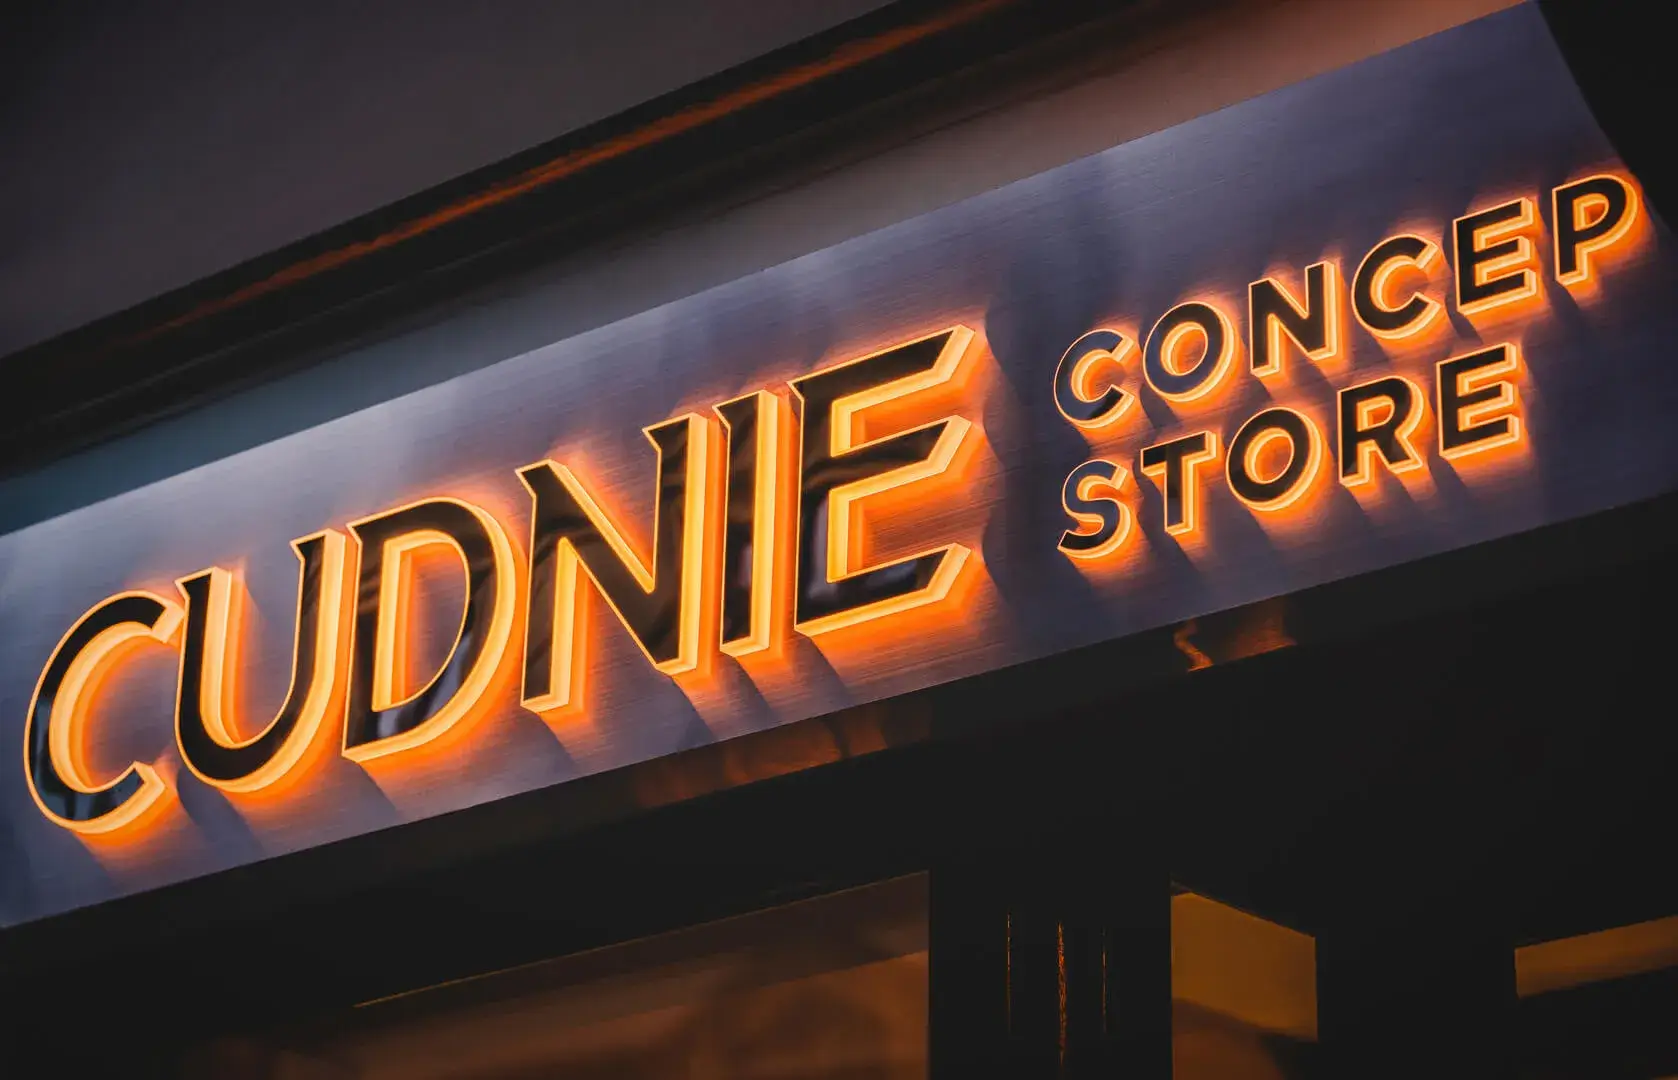 Cudnie - Concept Store, podświetlany kaseton, szyld